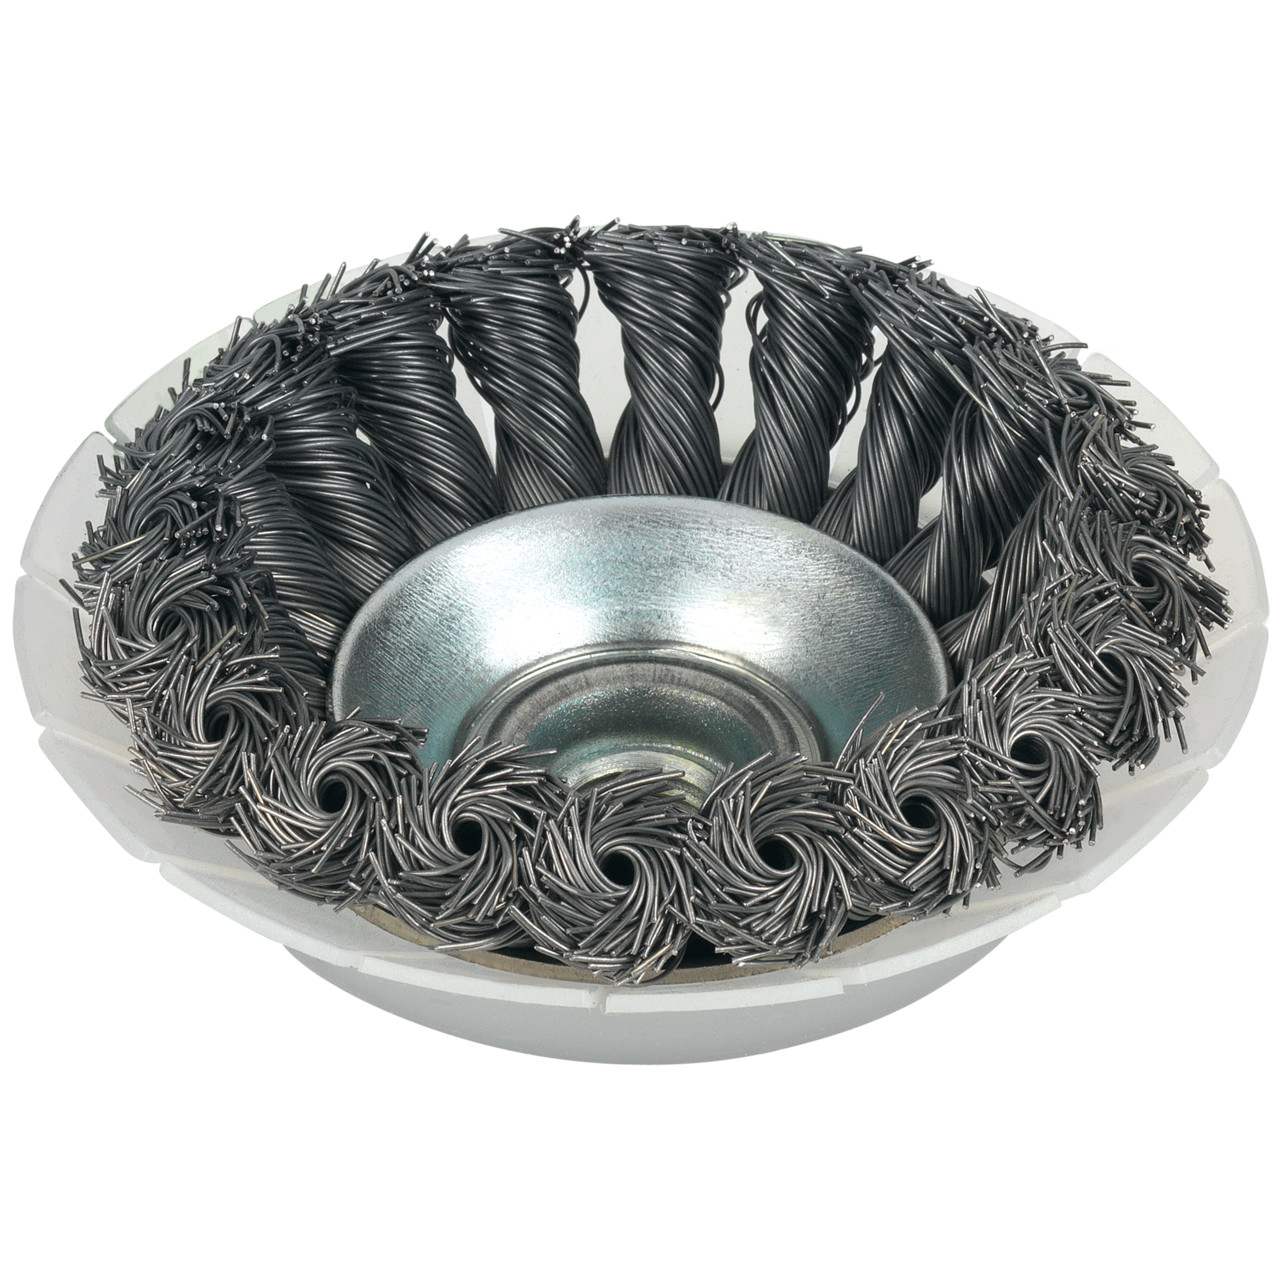 Tyrolit SHIELD spazzole coniche DxLxGE 100x20xM14-2 Per acciaio inox, forma: 28KDZ - (spazzola conica), Art. 34023818